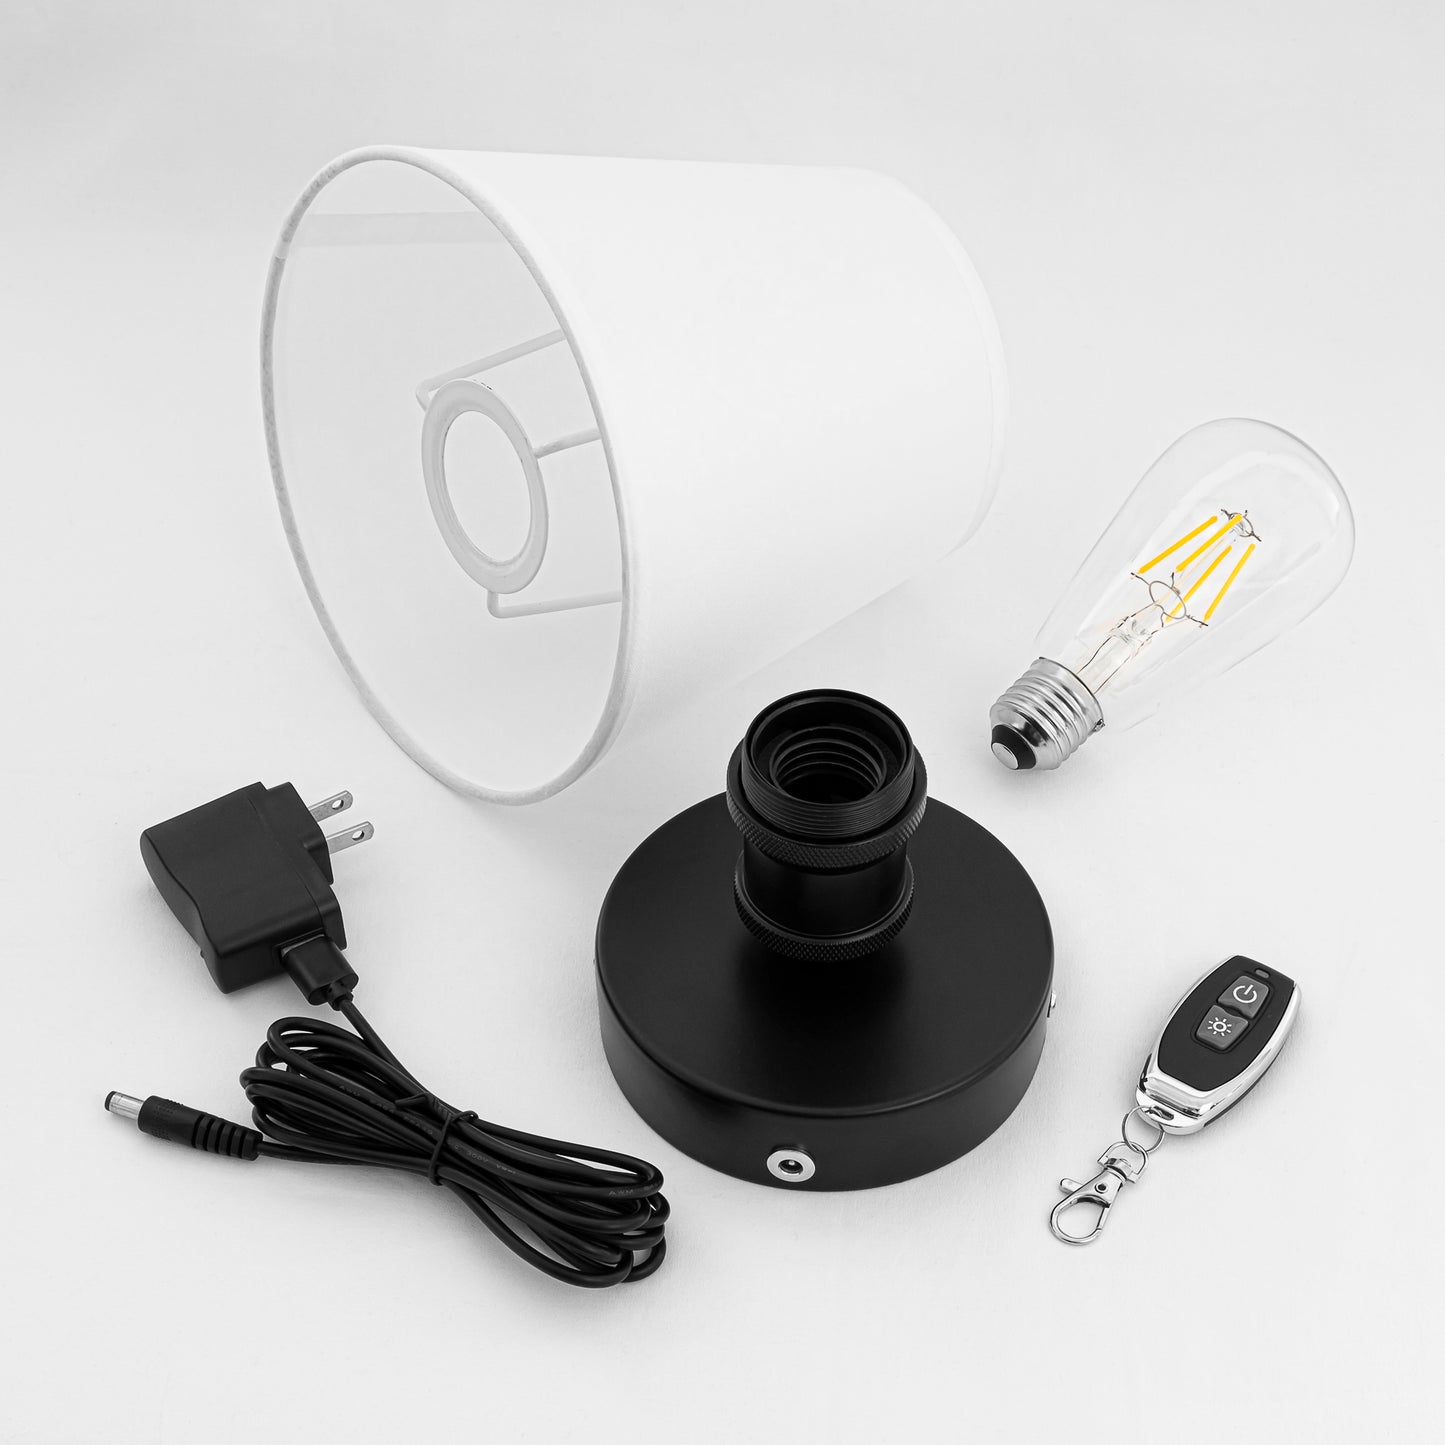 キャンペーン電球付属 充電式ライト バッテリー内蔵式照明  リモコン付き 配線不要 電球付属  LEDライト  賃貸対応 テーブルランプ  デスクランプ ベッドサイドサイト